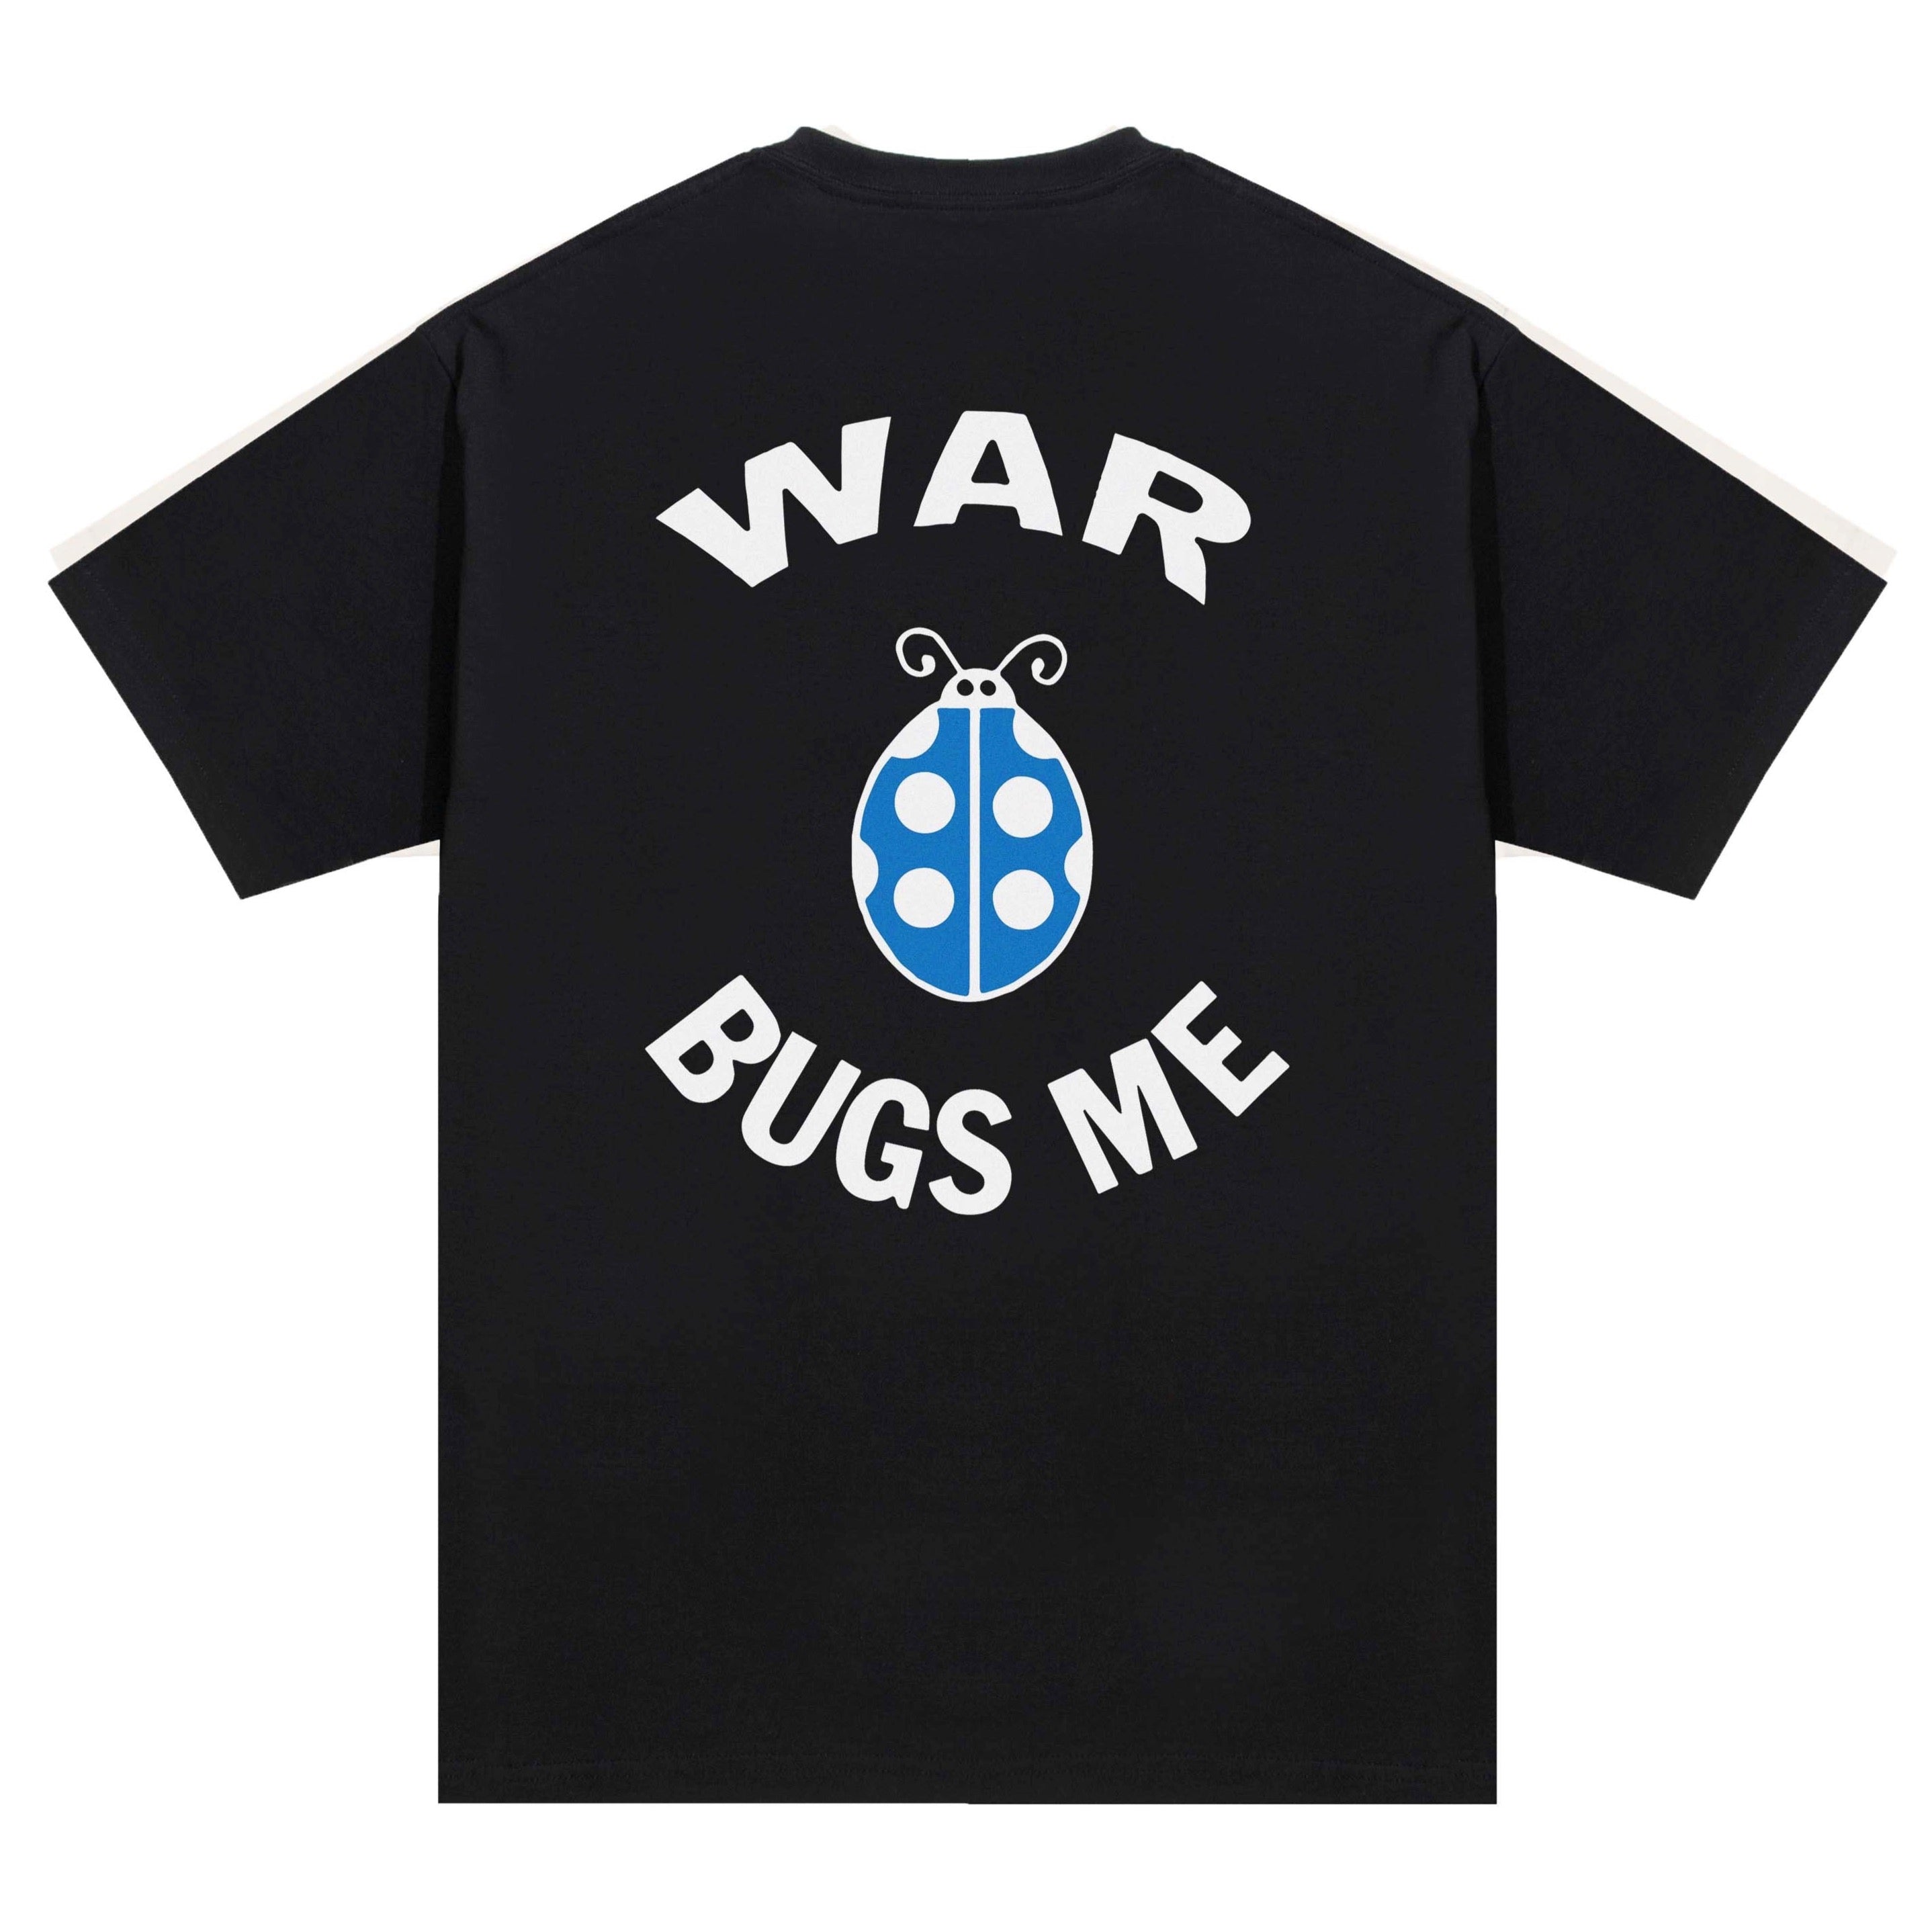 war bugs me - War Bugs Me - Logo Tee - Black